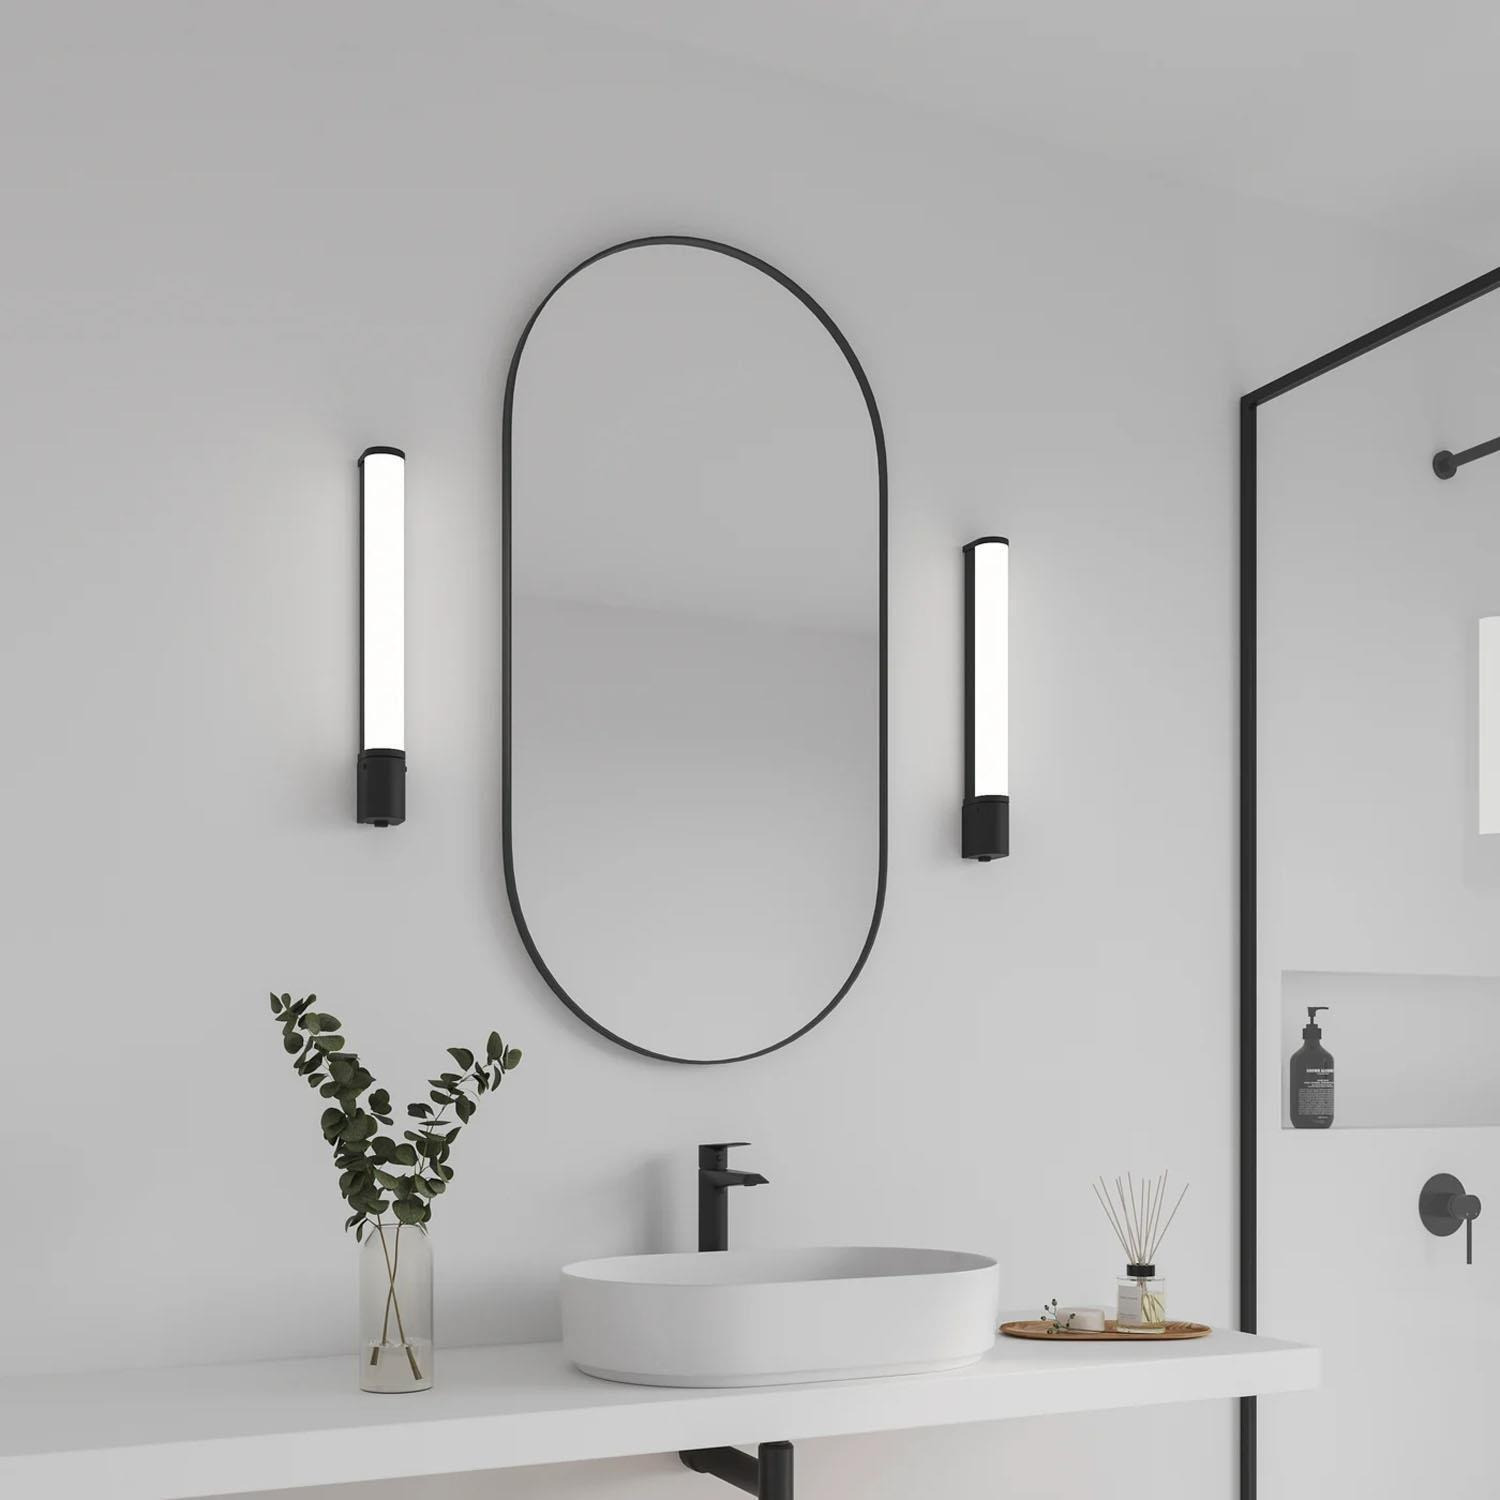 Malaika 49 Indoor Bathroom Wall Light in Black (Height) 7cm - image 1